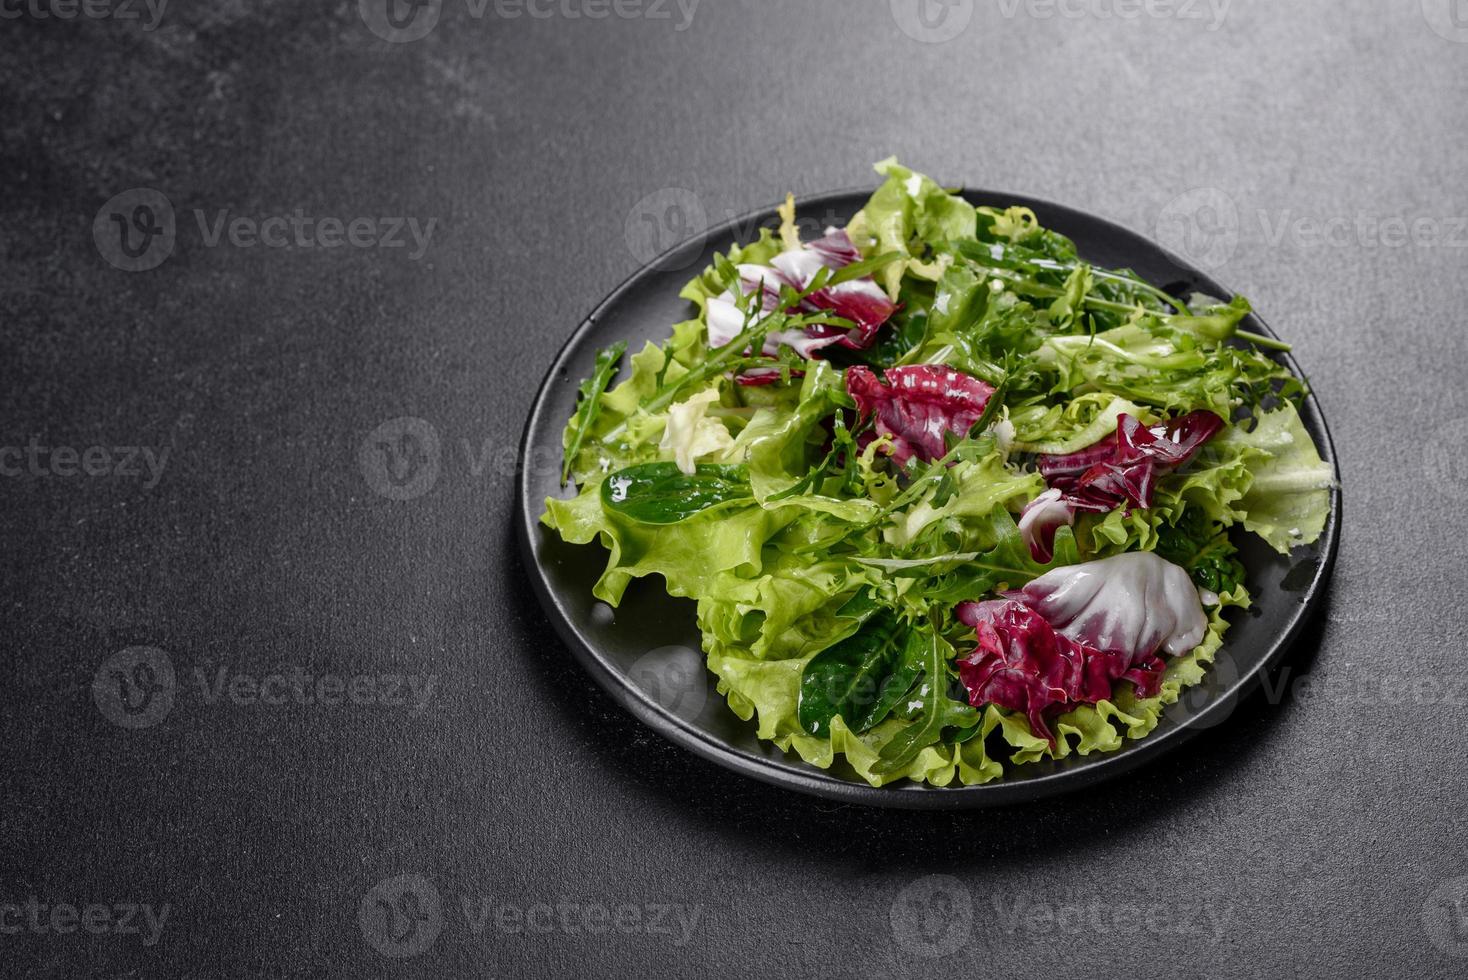 deliciosa salada vegetariana fresca de vegetais picados em um prato foto